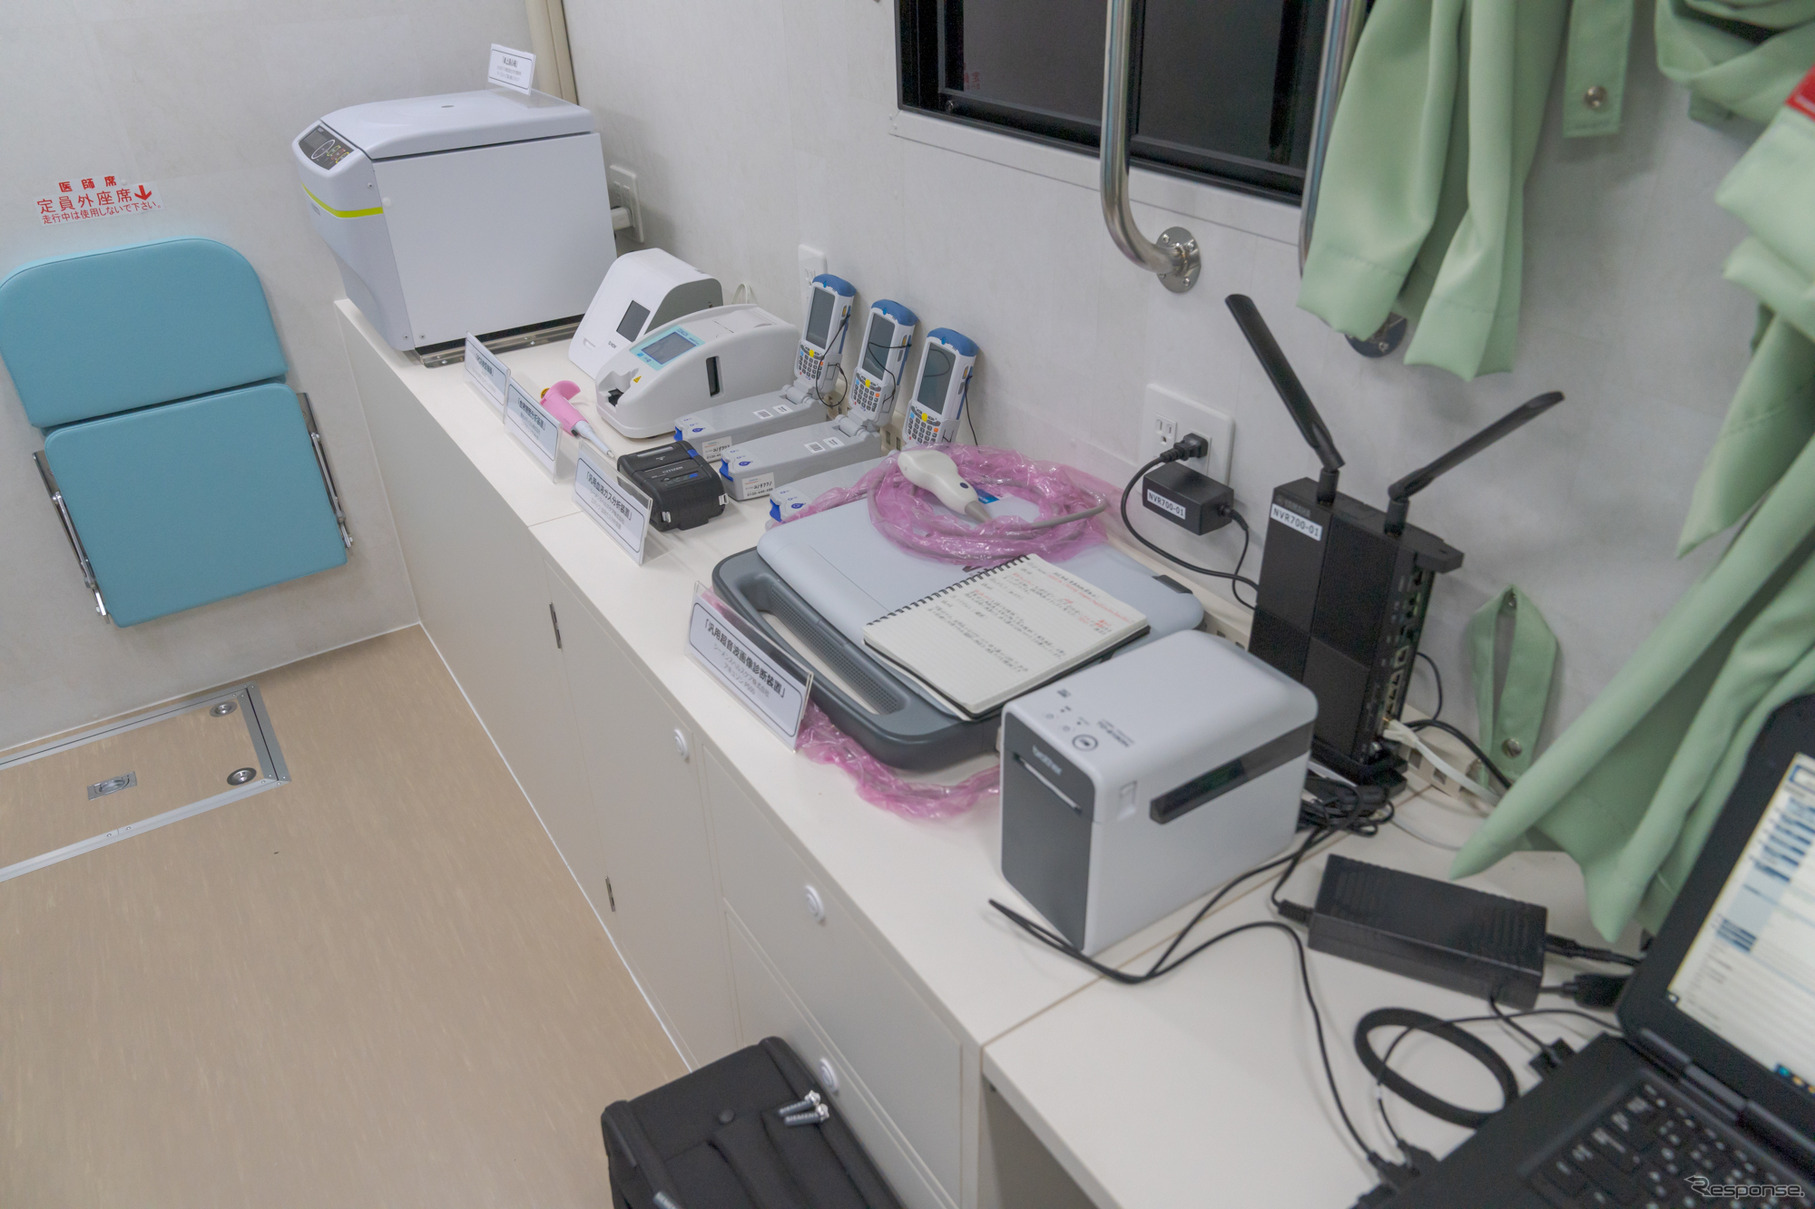 血液ガス分析装置の奥には、卓上遠心機や、PCR検査機、血液凝固分析装置などが置かれている。